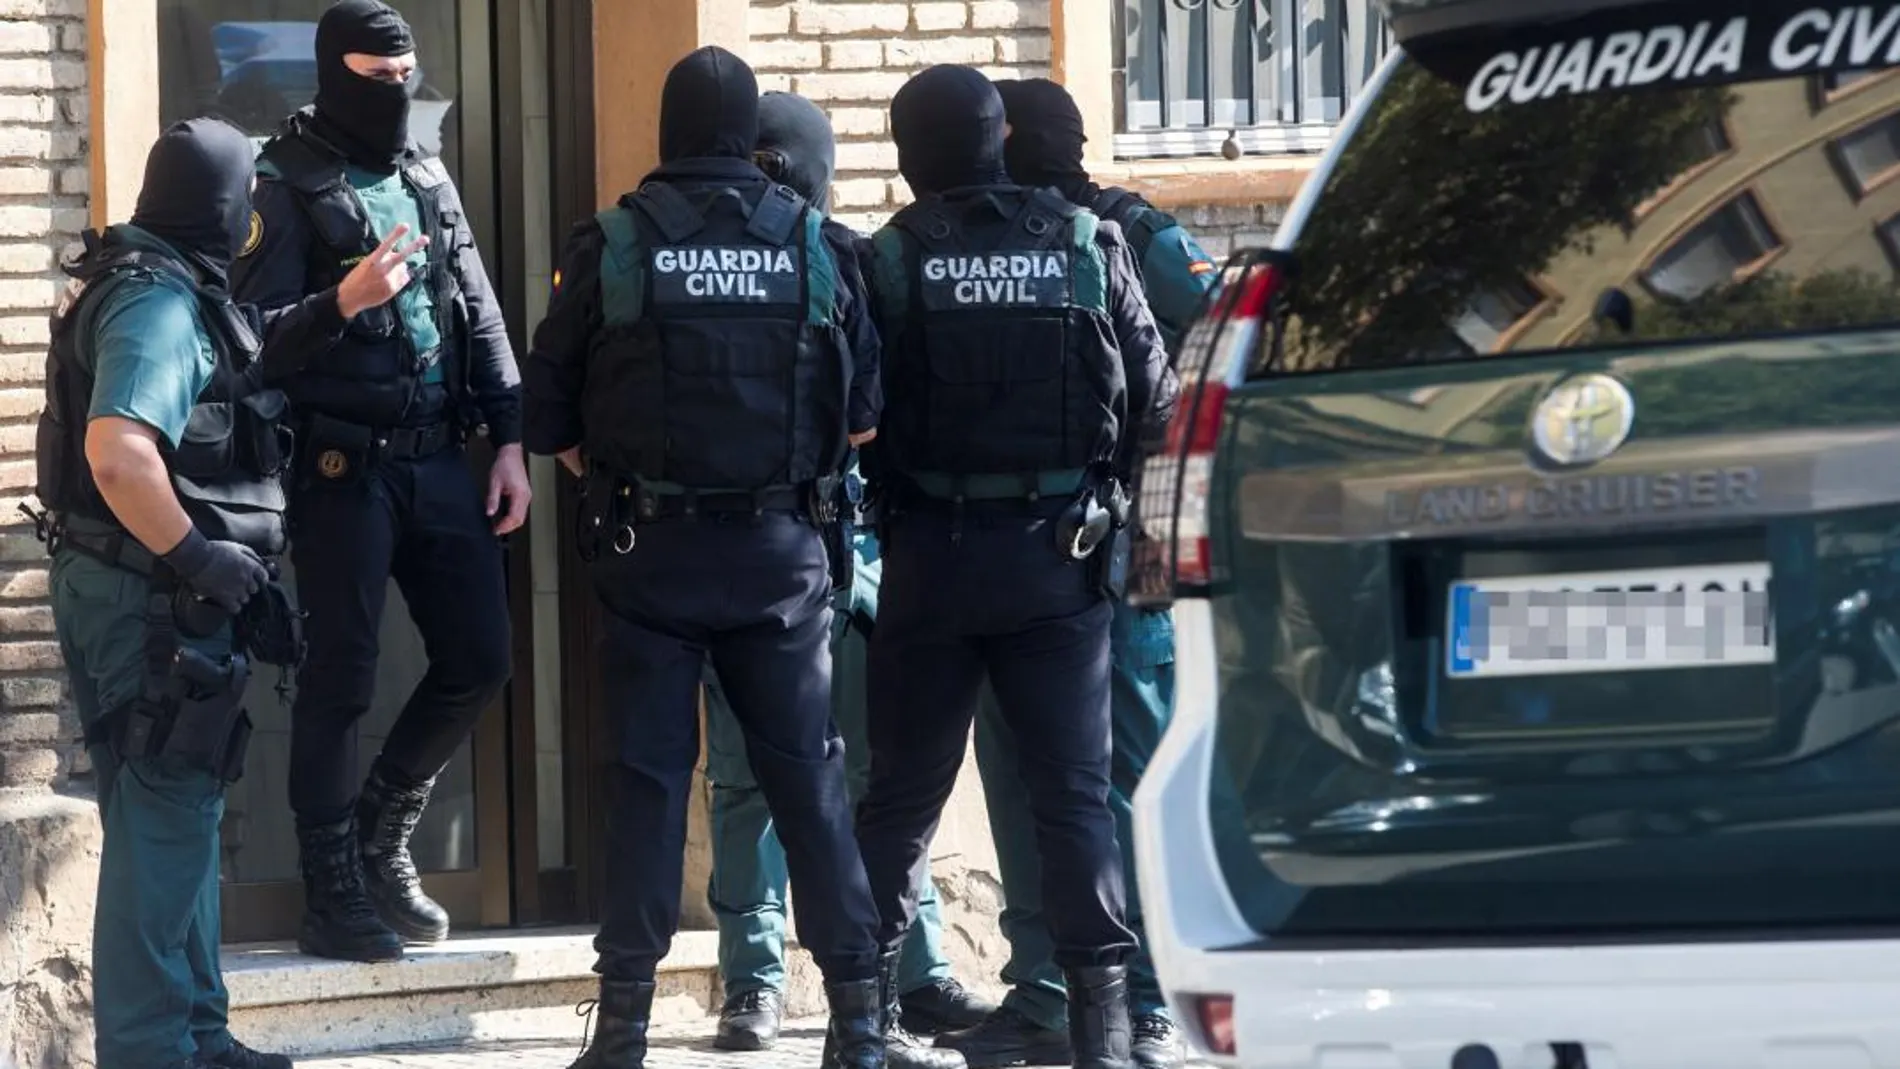 La Guardia Civil realiza una operación en Mataró contra una célula yihadista por presuntamente dedicarse a la captación de personas de Barcelona y Tarragona. Foto: Efe/Quique García